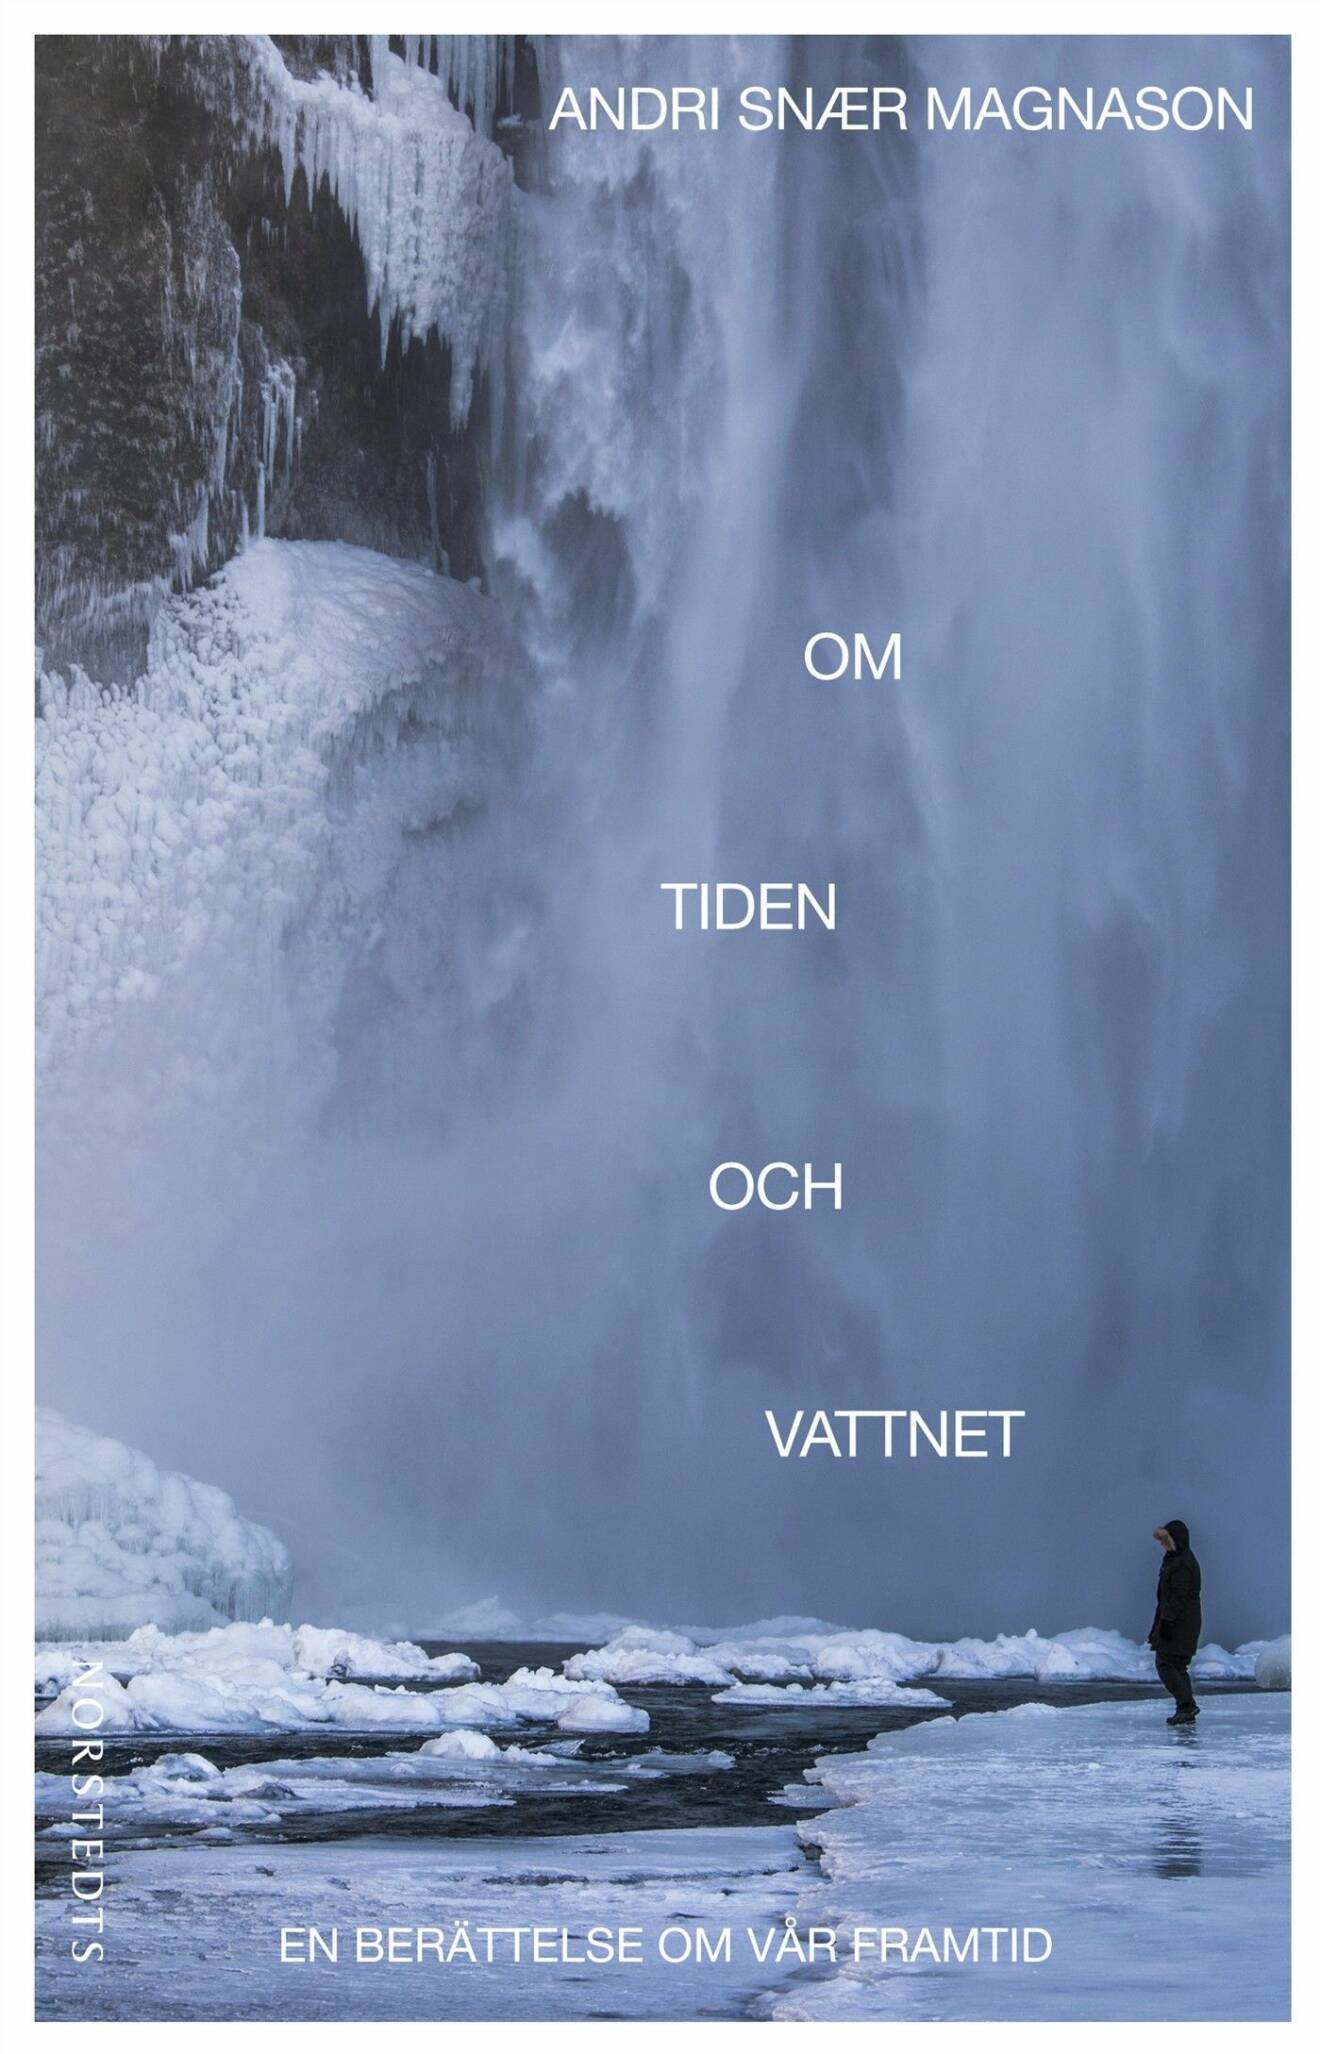 Om tiden och vattnet, av Andri Snær Magnason.